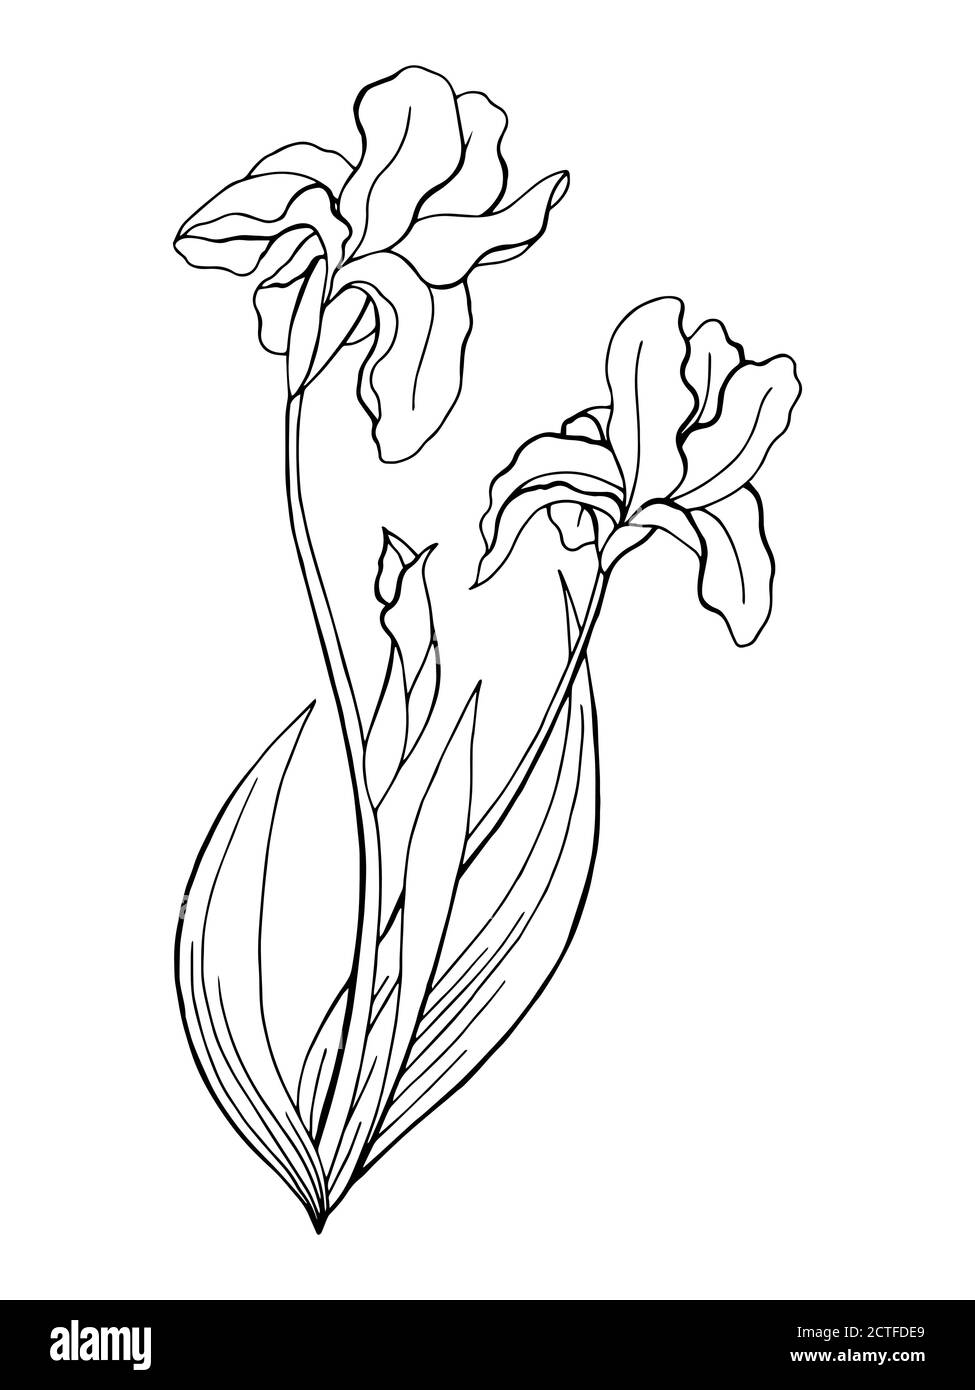 Iris flower graphic art black white isolated illustration vector Stock ...